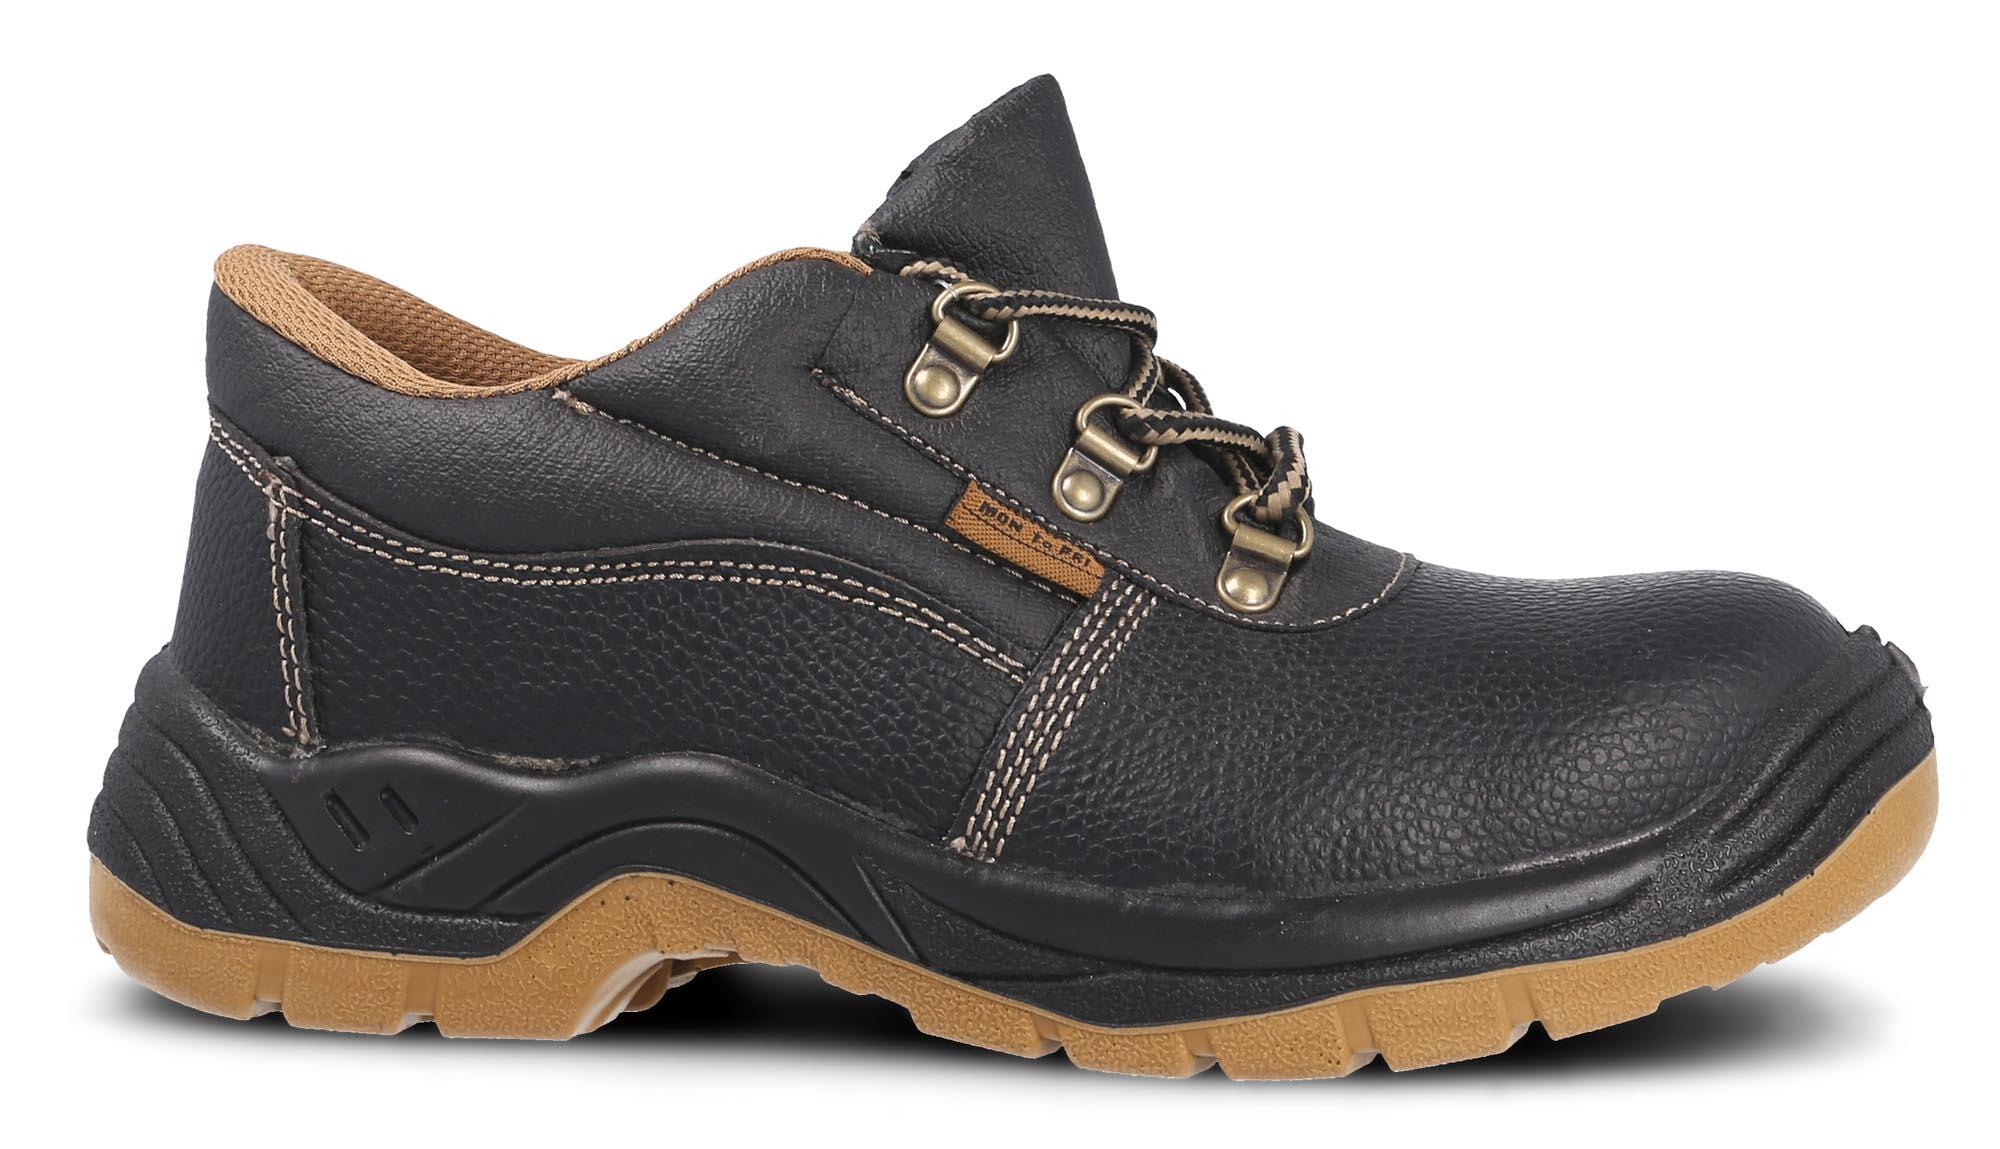 Zapato seguridad paredes, zp1000 piel negro, s3 talla 48